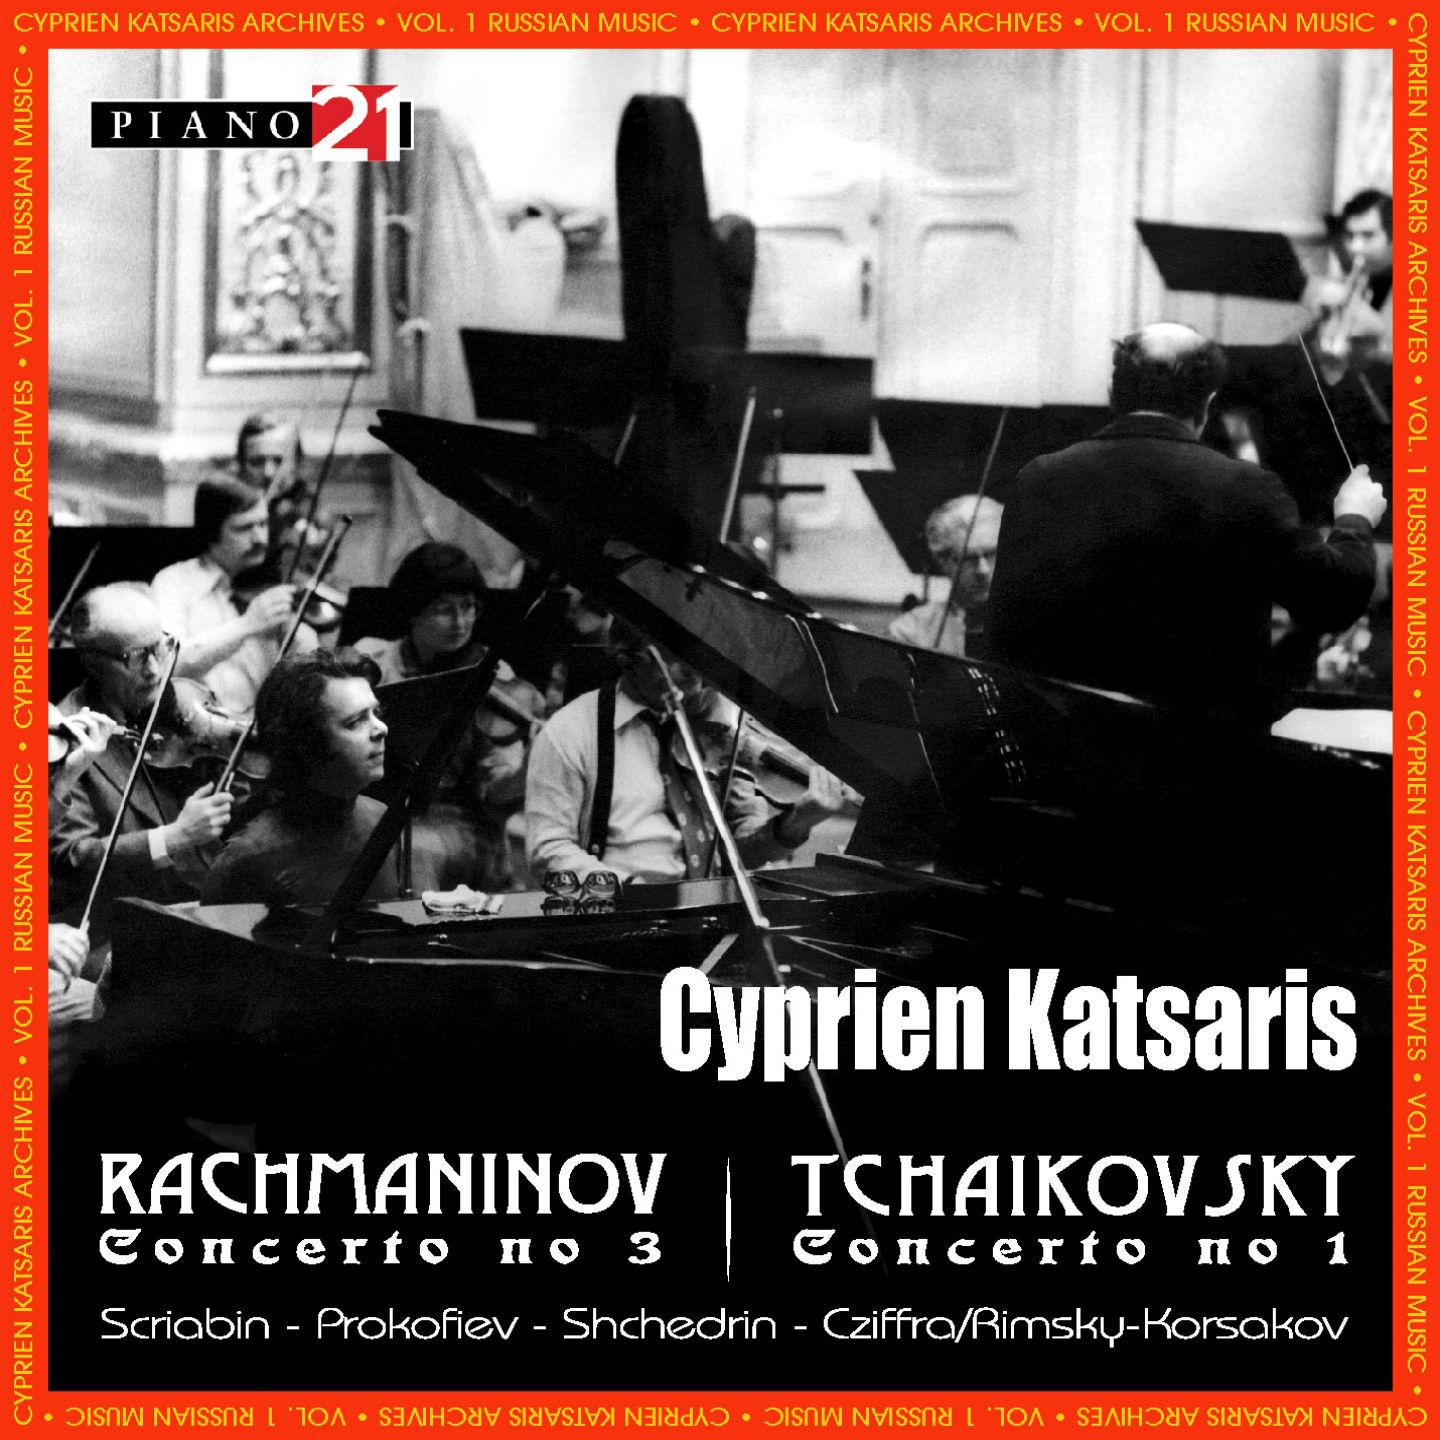 Russian Music - Vol. 2: Tchaikovsky, Prokofiev, Shchedrin, Scriabin, Rimsky-Korsakov (Cyprien Katsaris Archives)